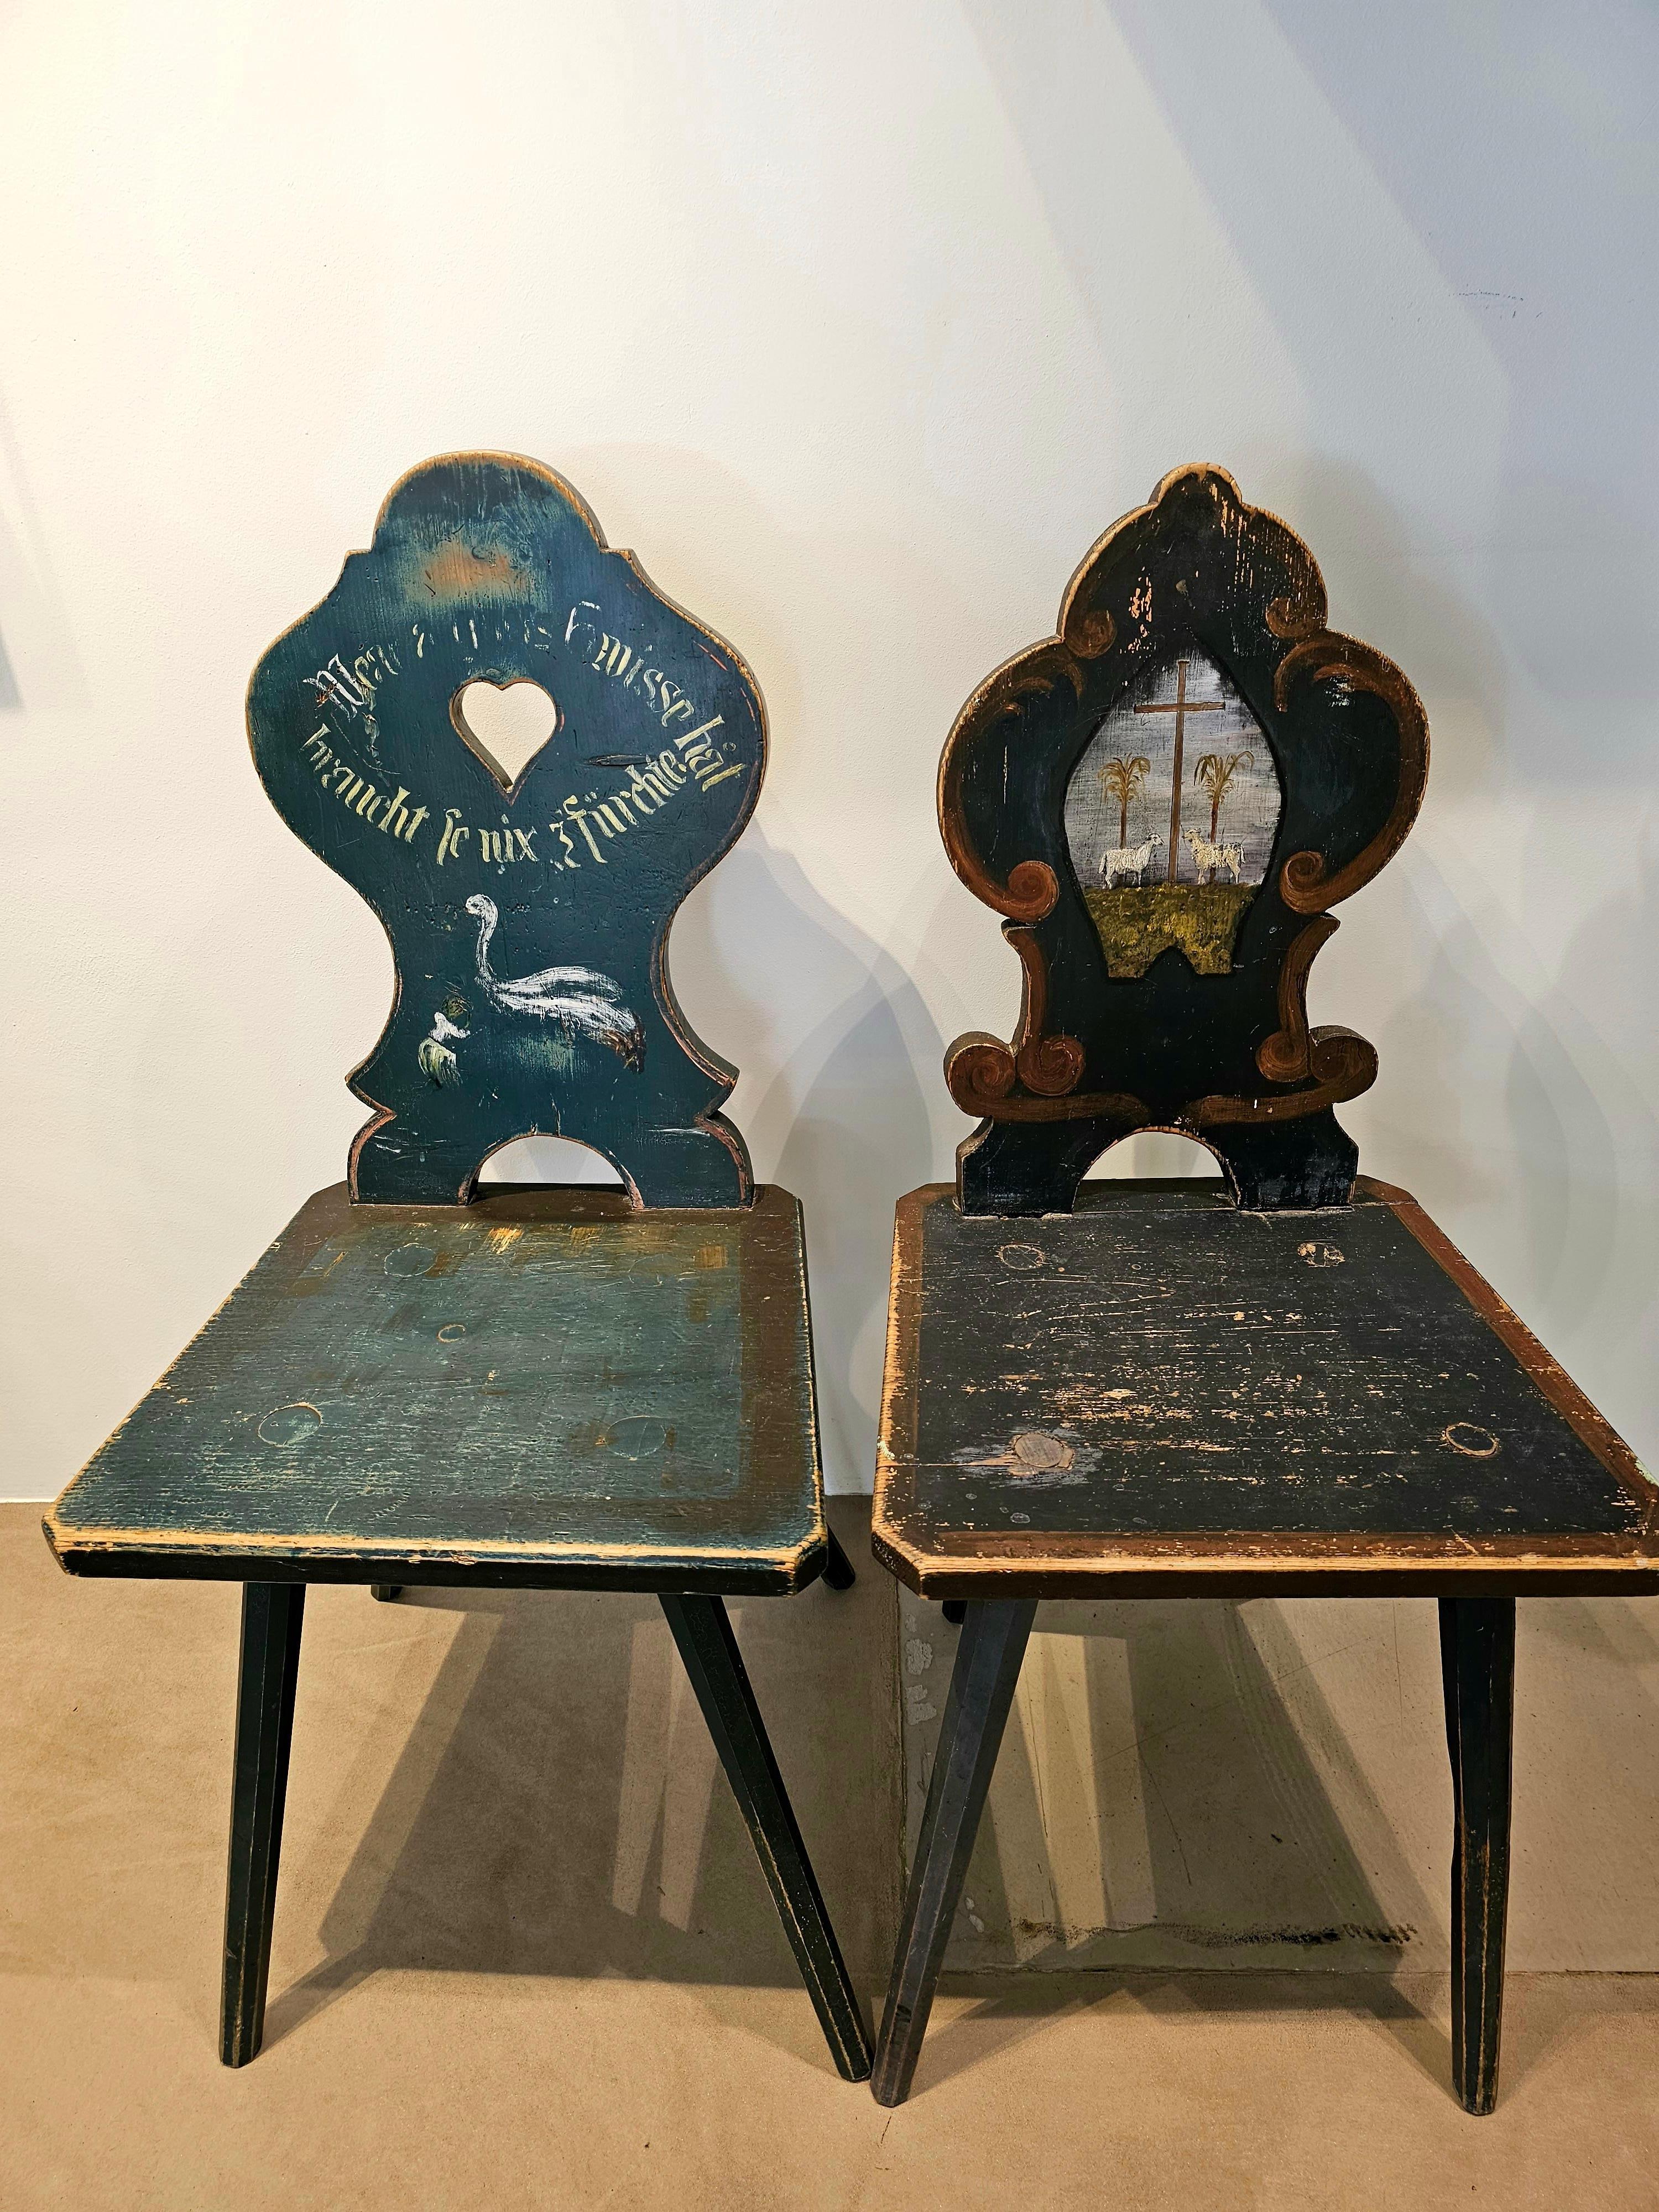 Chaise de ferme en bois peinte à la main dans le style de la forêt noire en bleu-vert avec un médaillon représentant deux moutons.
Couleurs et peintures originales sans restaurations.
Une deuxième chaise assortie est disponible